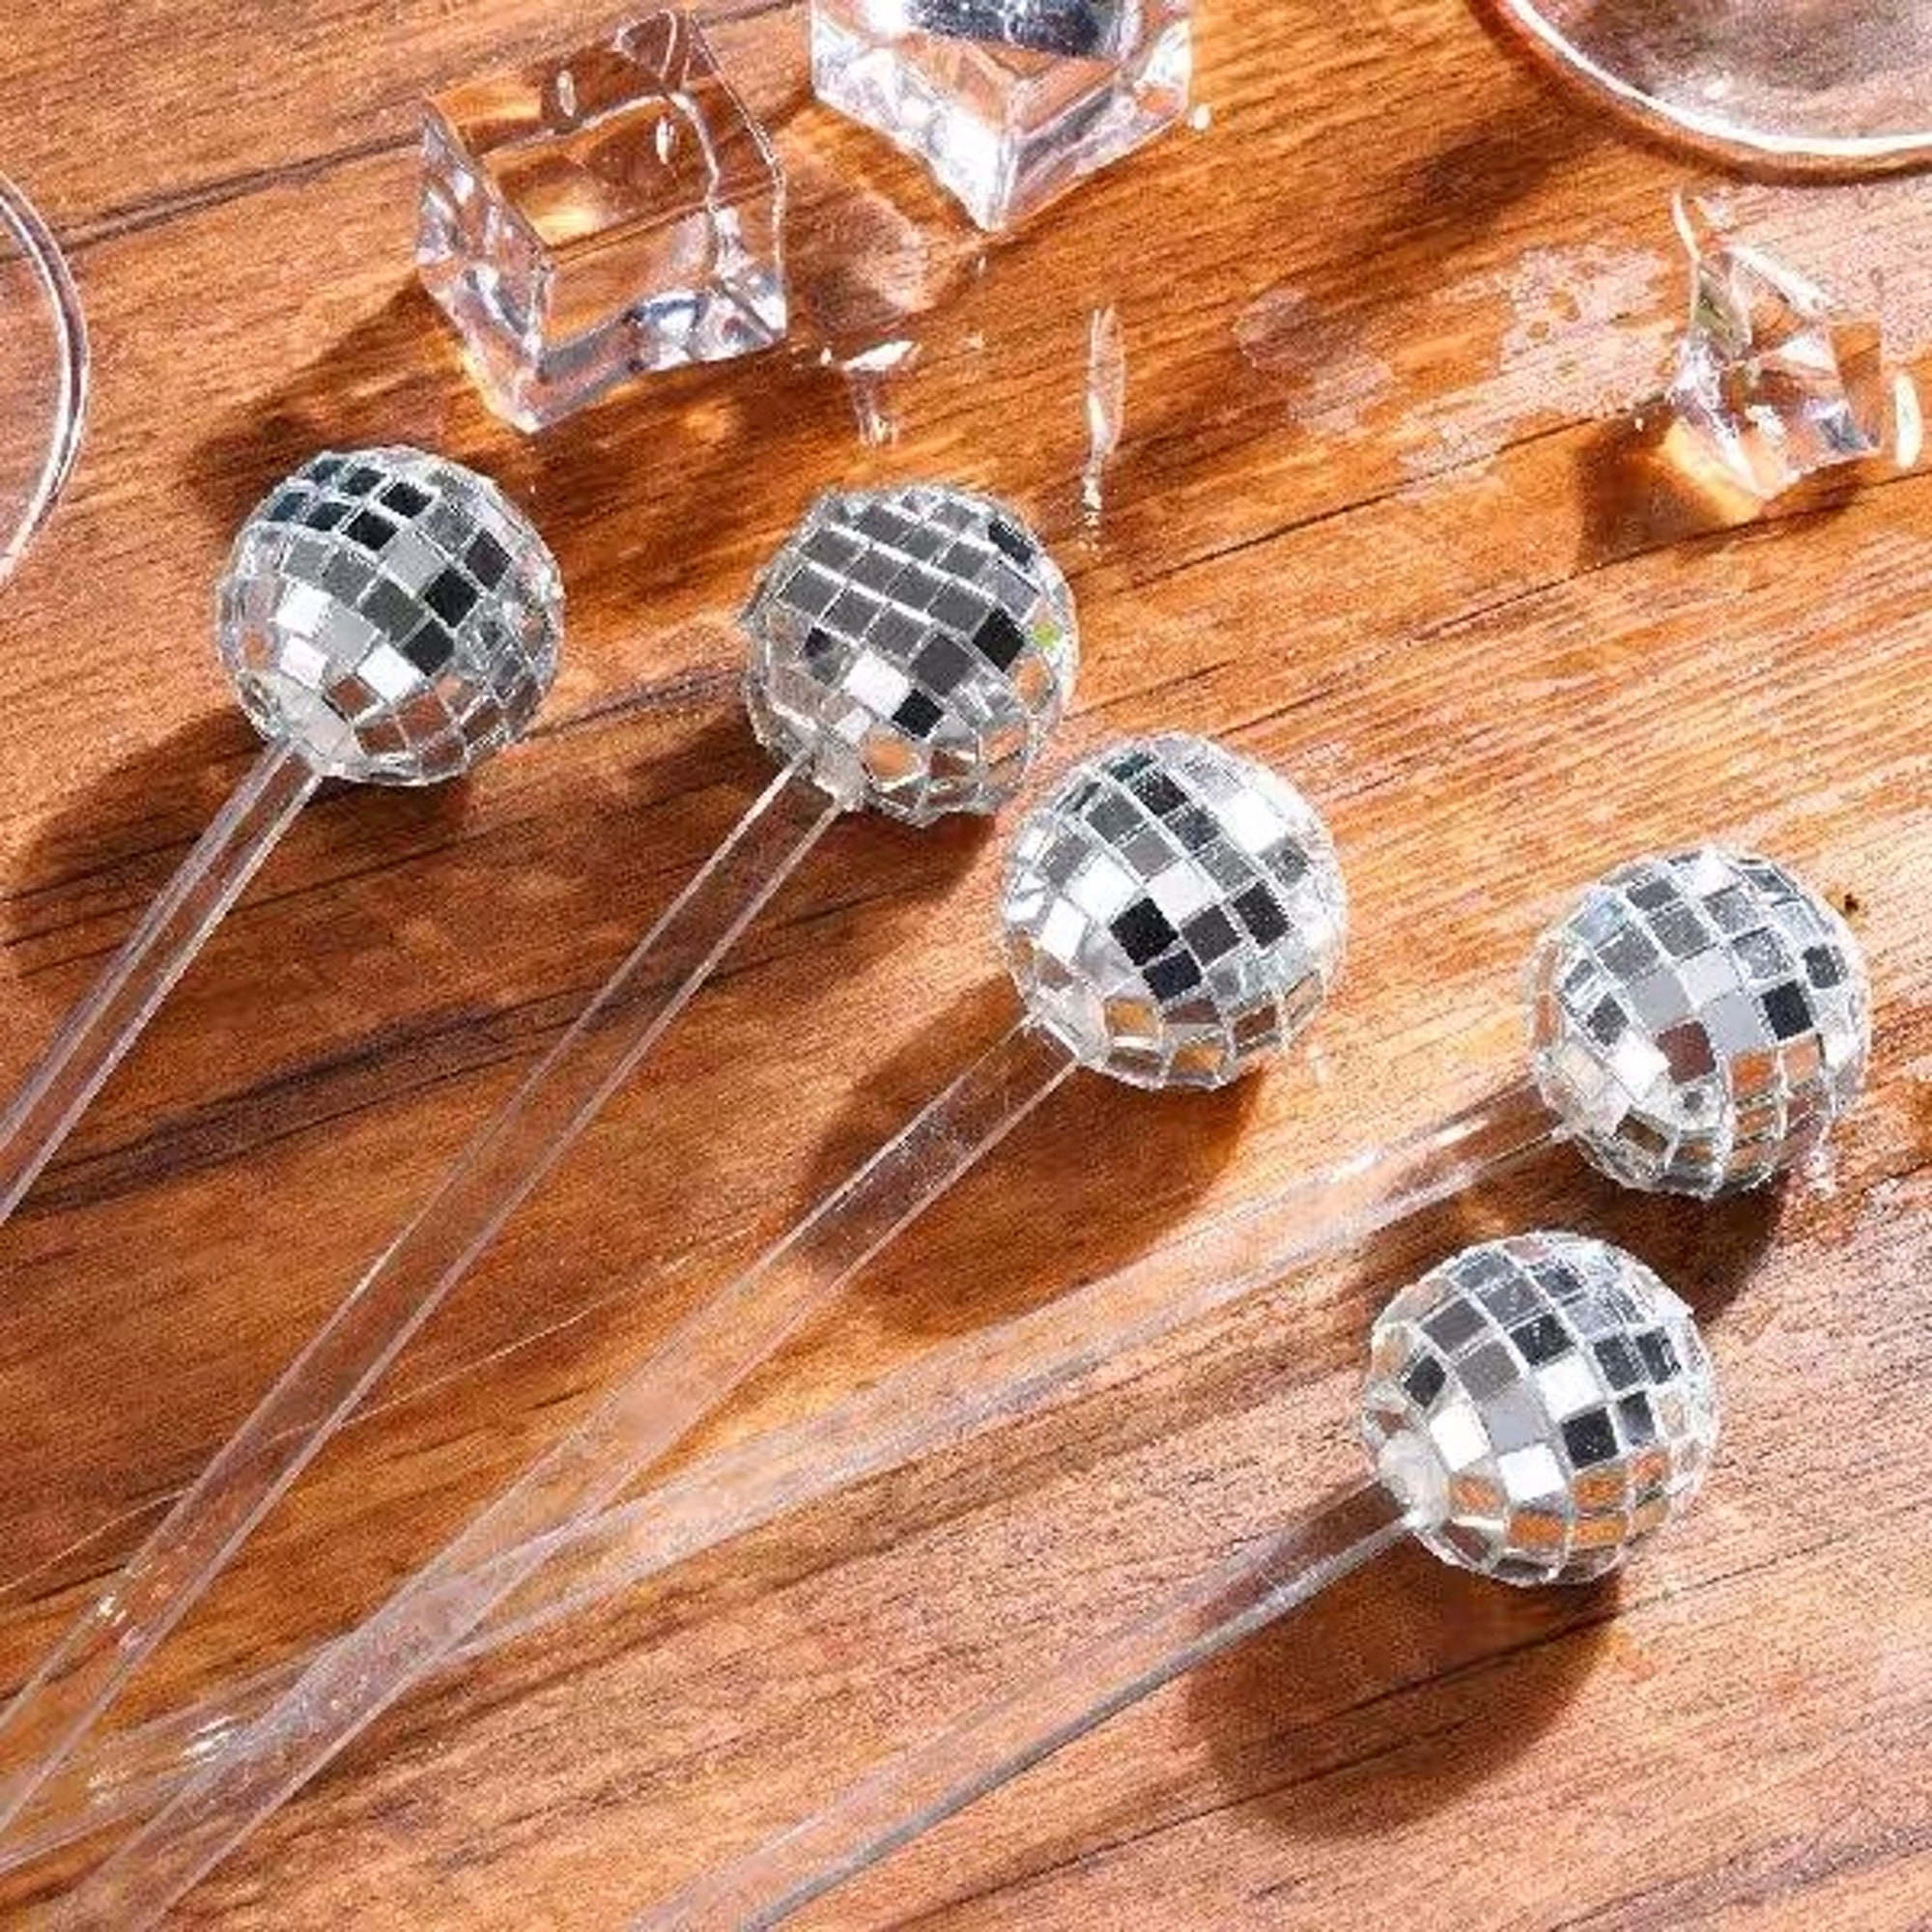 12 Pieces Cocktail Stirrers, Disco Balls Drink Stirrer Plastic Round Top  Swizzle Sticks Drink Mixing Stirrers Mirror Disco Ball Drink Stirrer for  70s